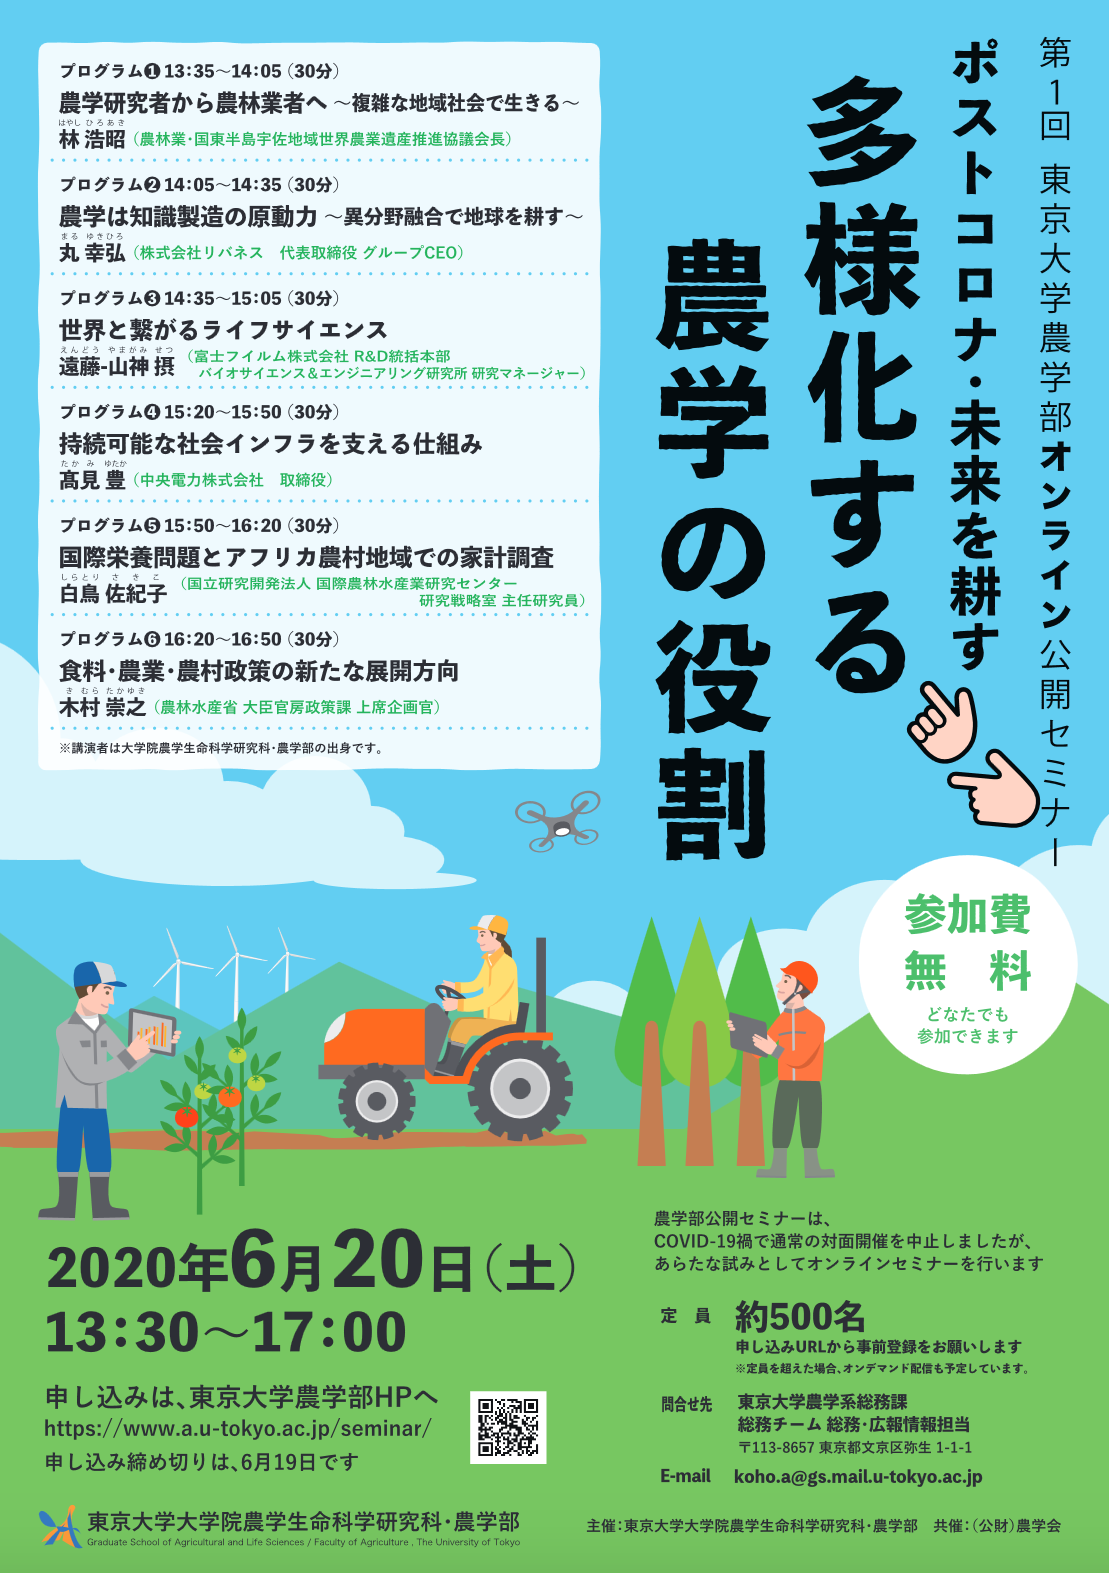 第1回東京大学農学部オンライン公開セミナー「ポストコロナ・未来を耕す -- 多様化する農学の役割」の開催